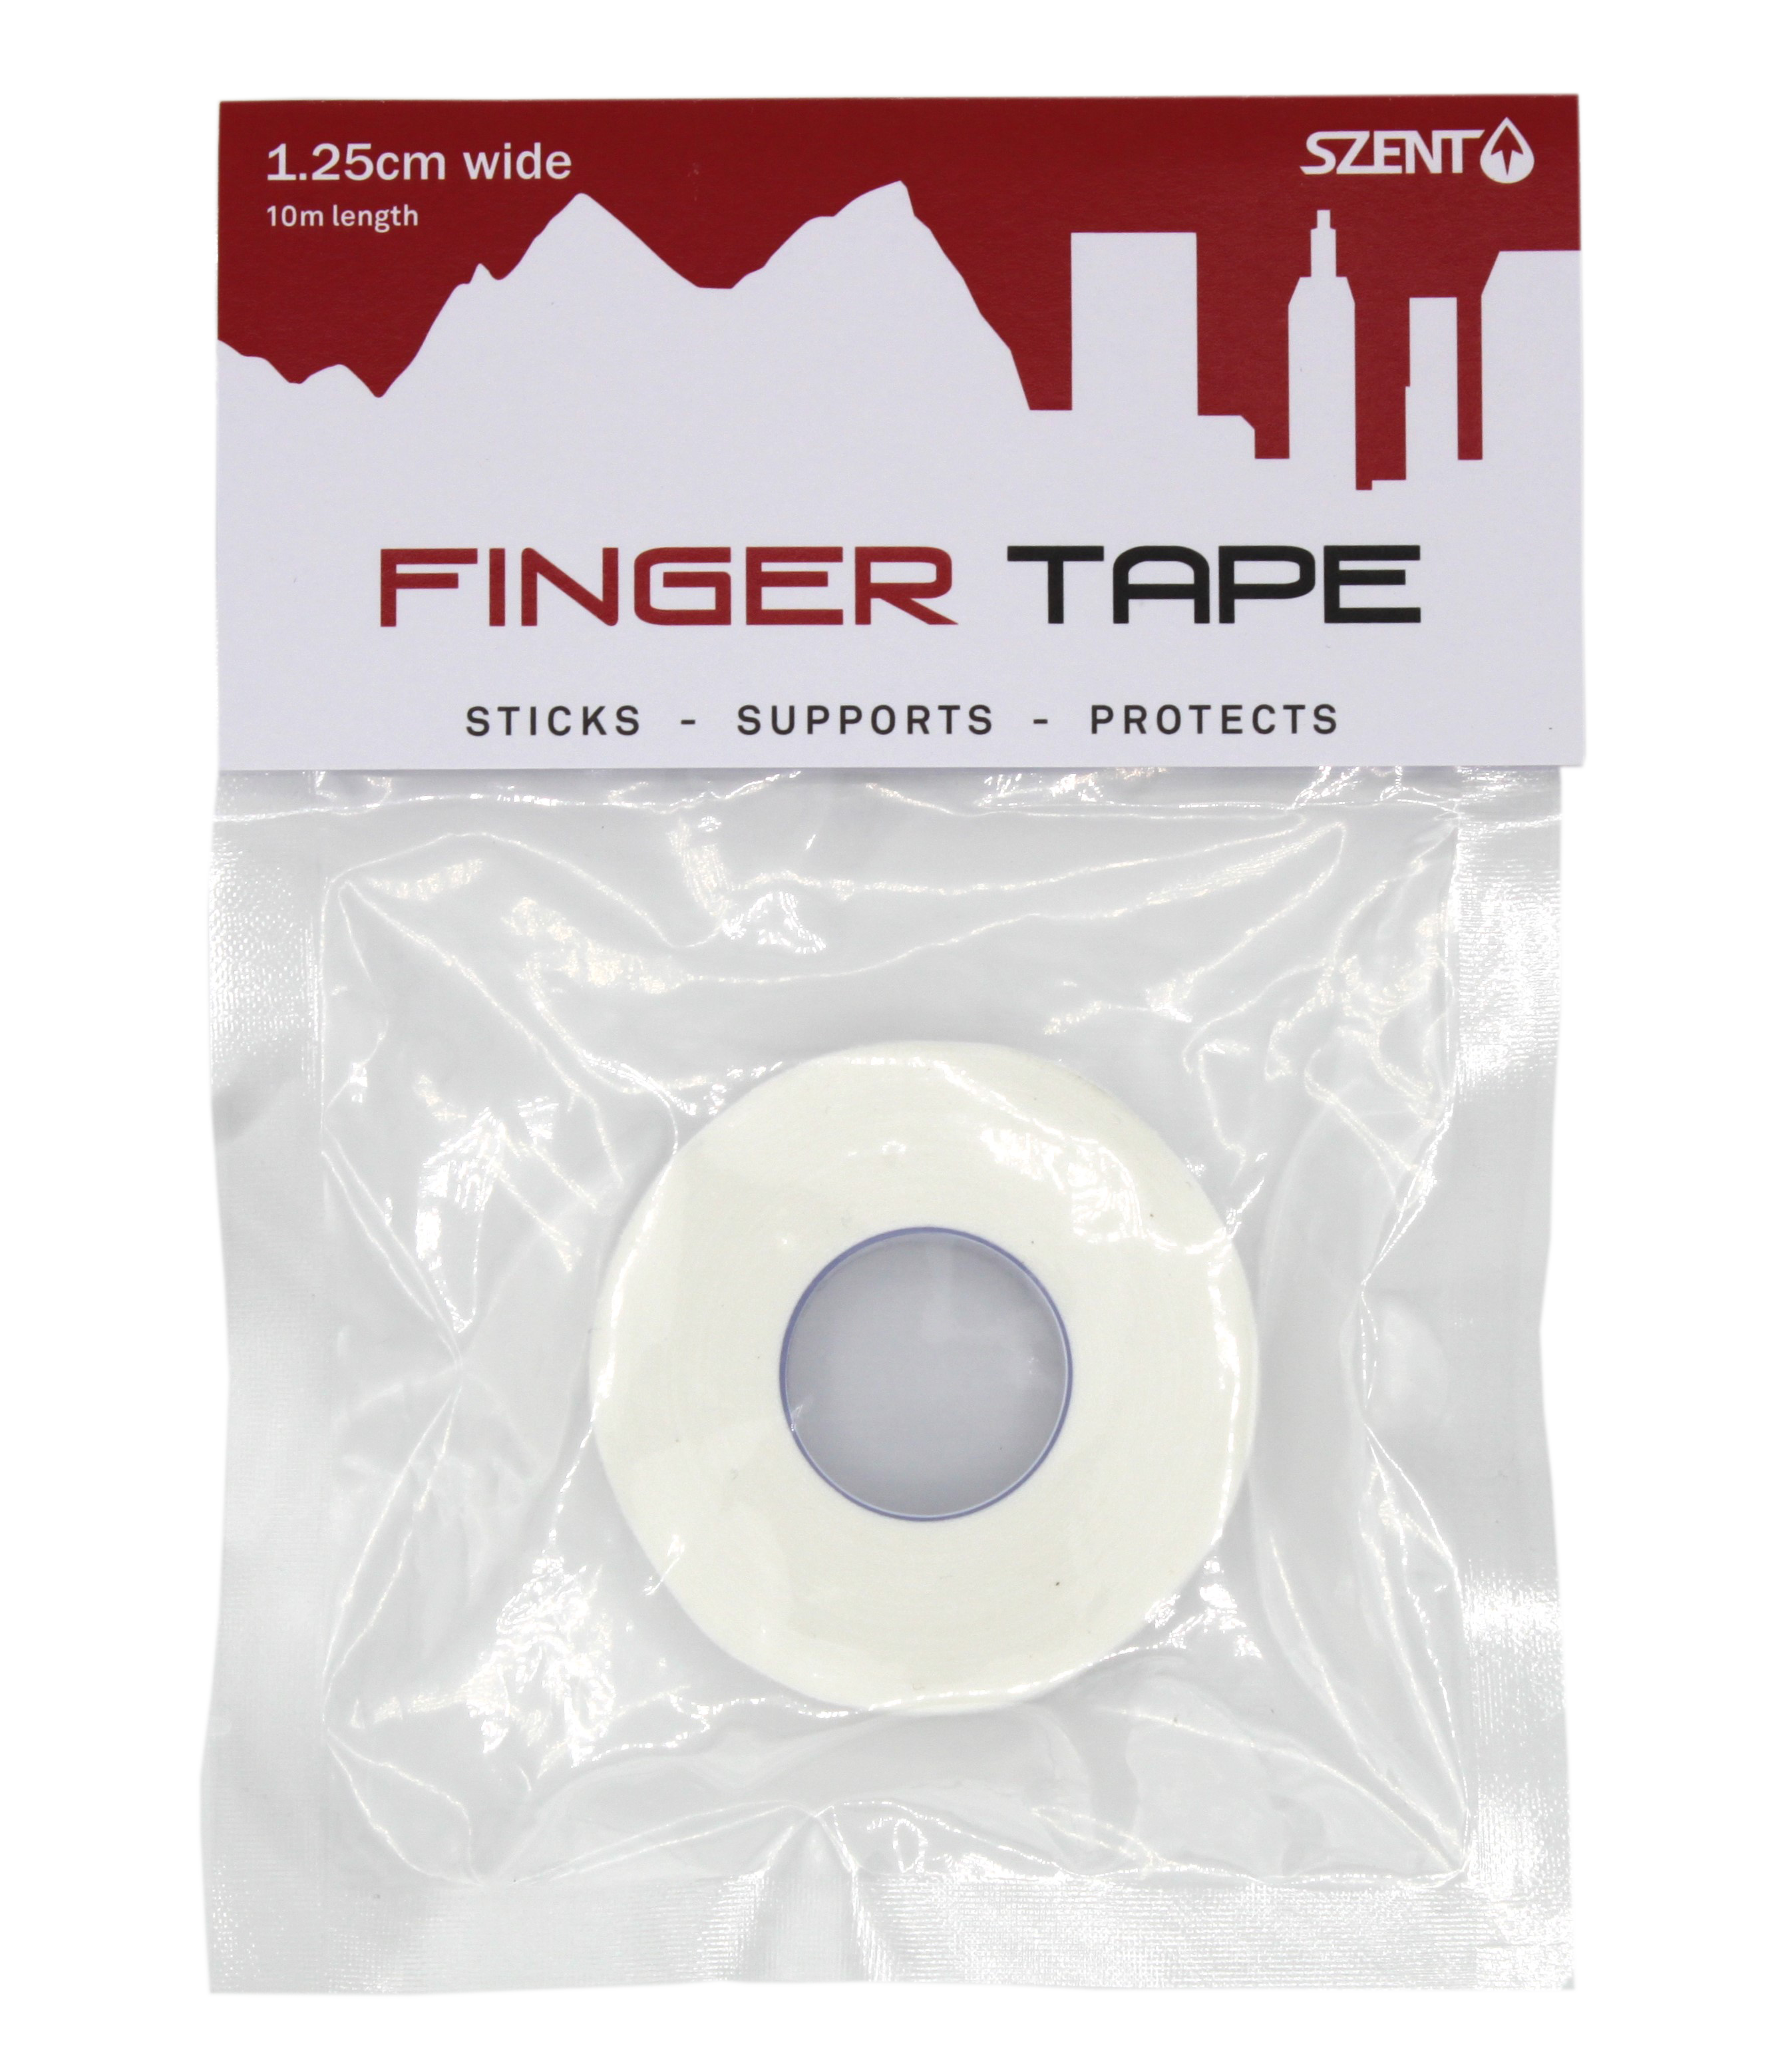 Finger tape